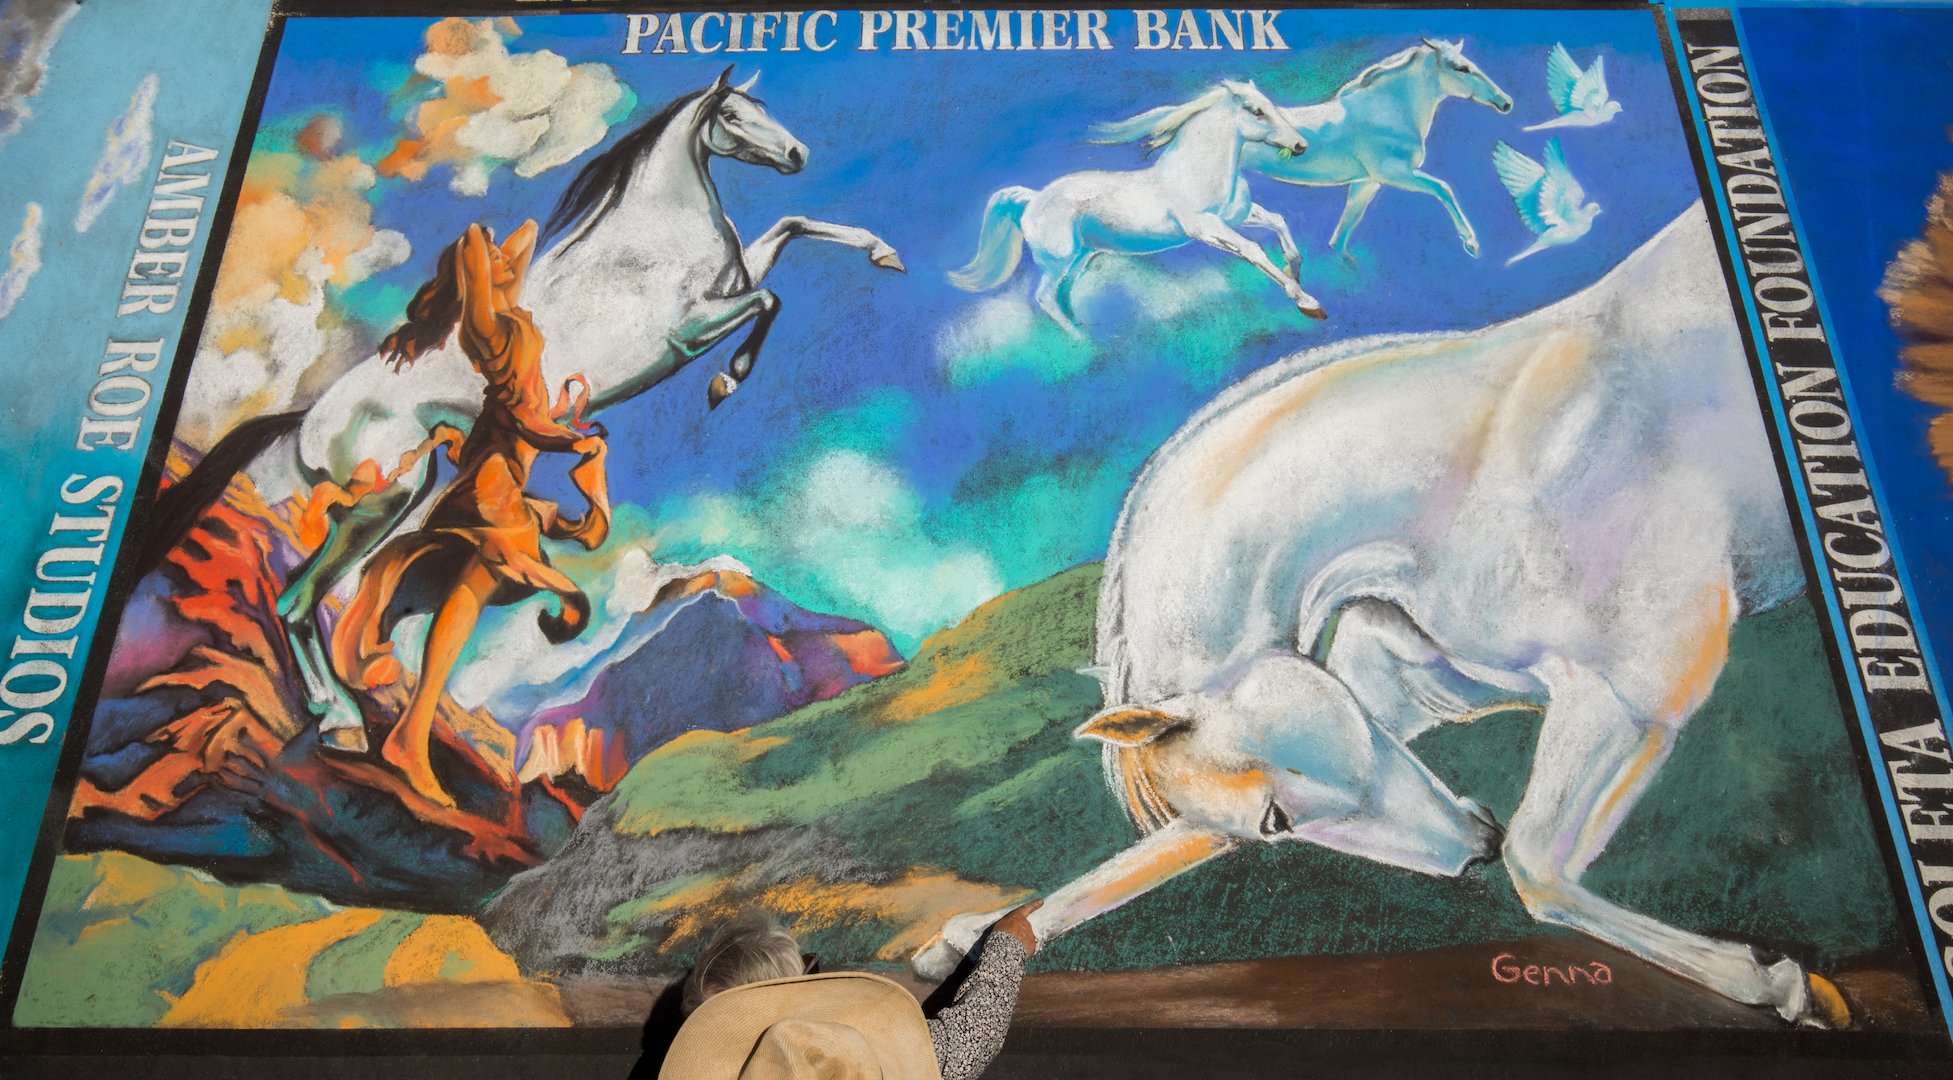  Pacific Premier Bank  Artist:  Genna Panzarella 